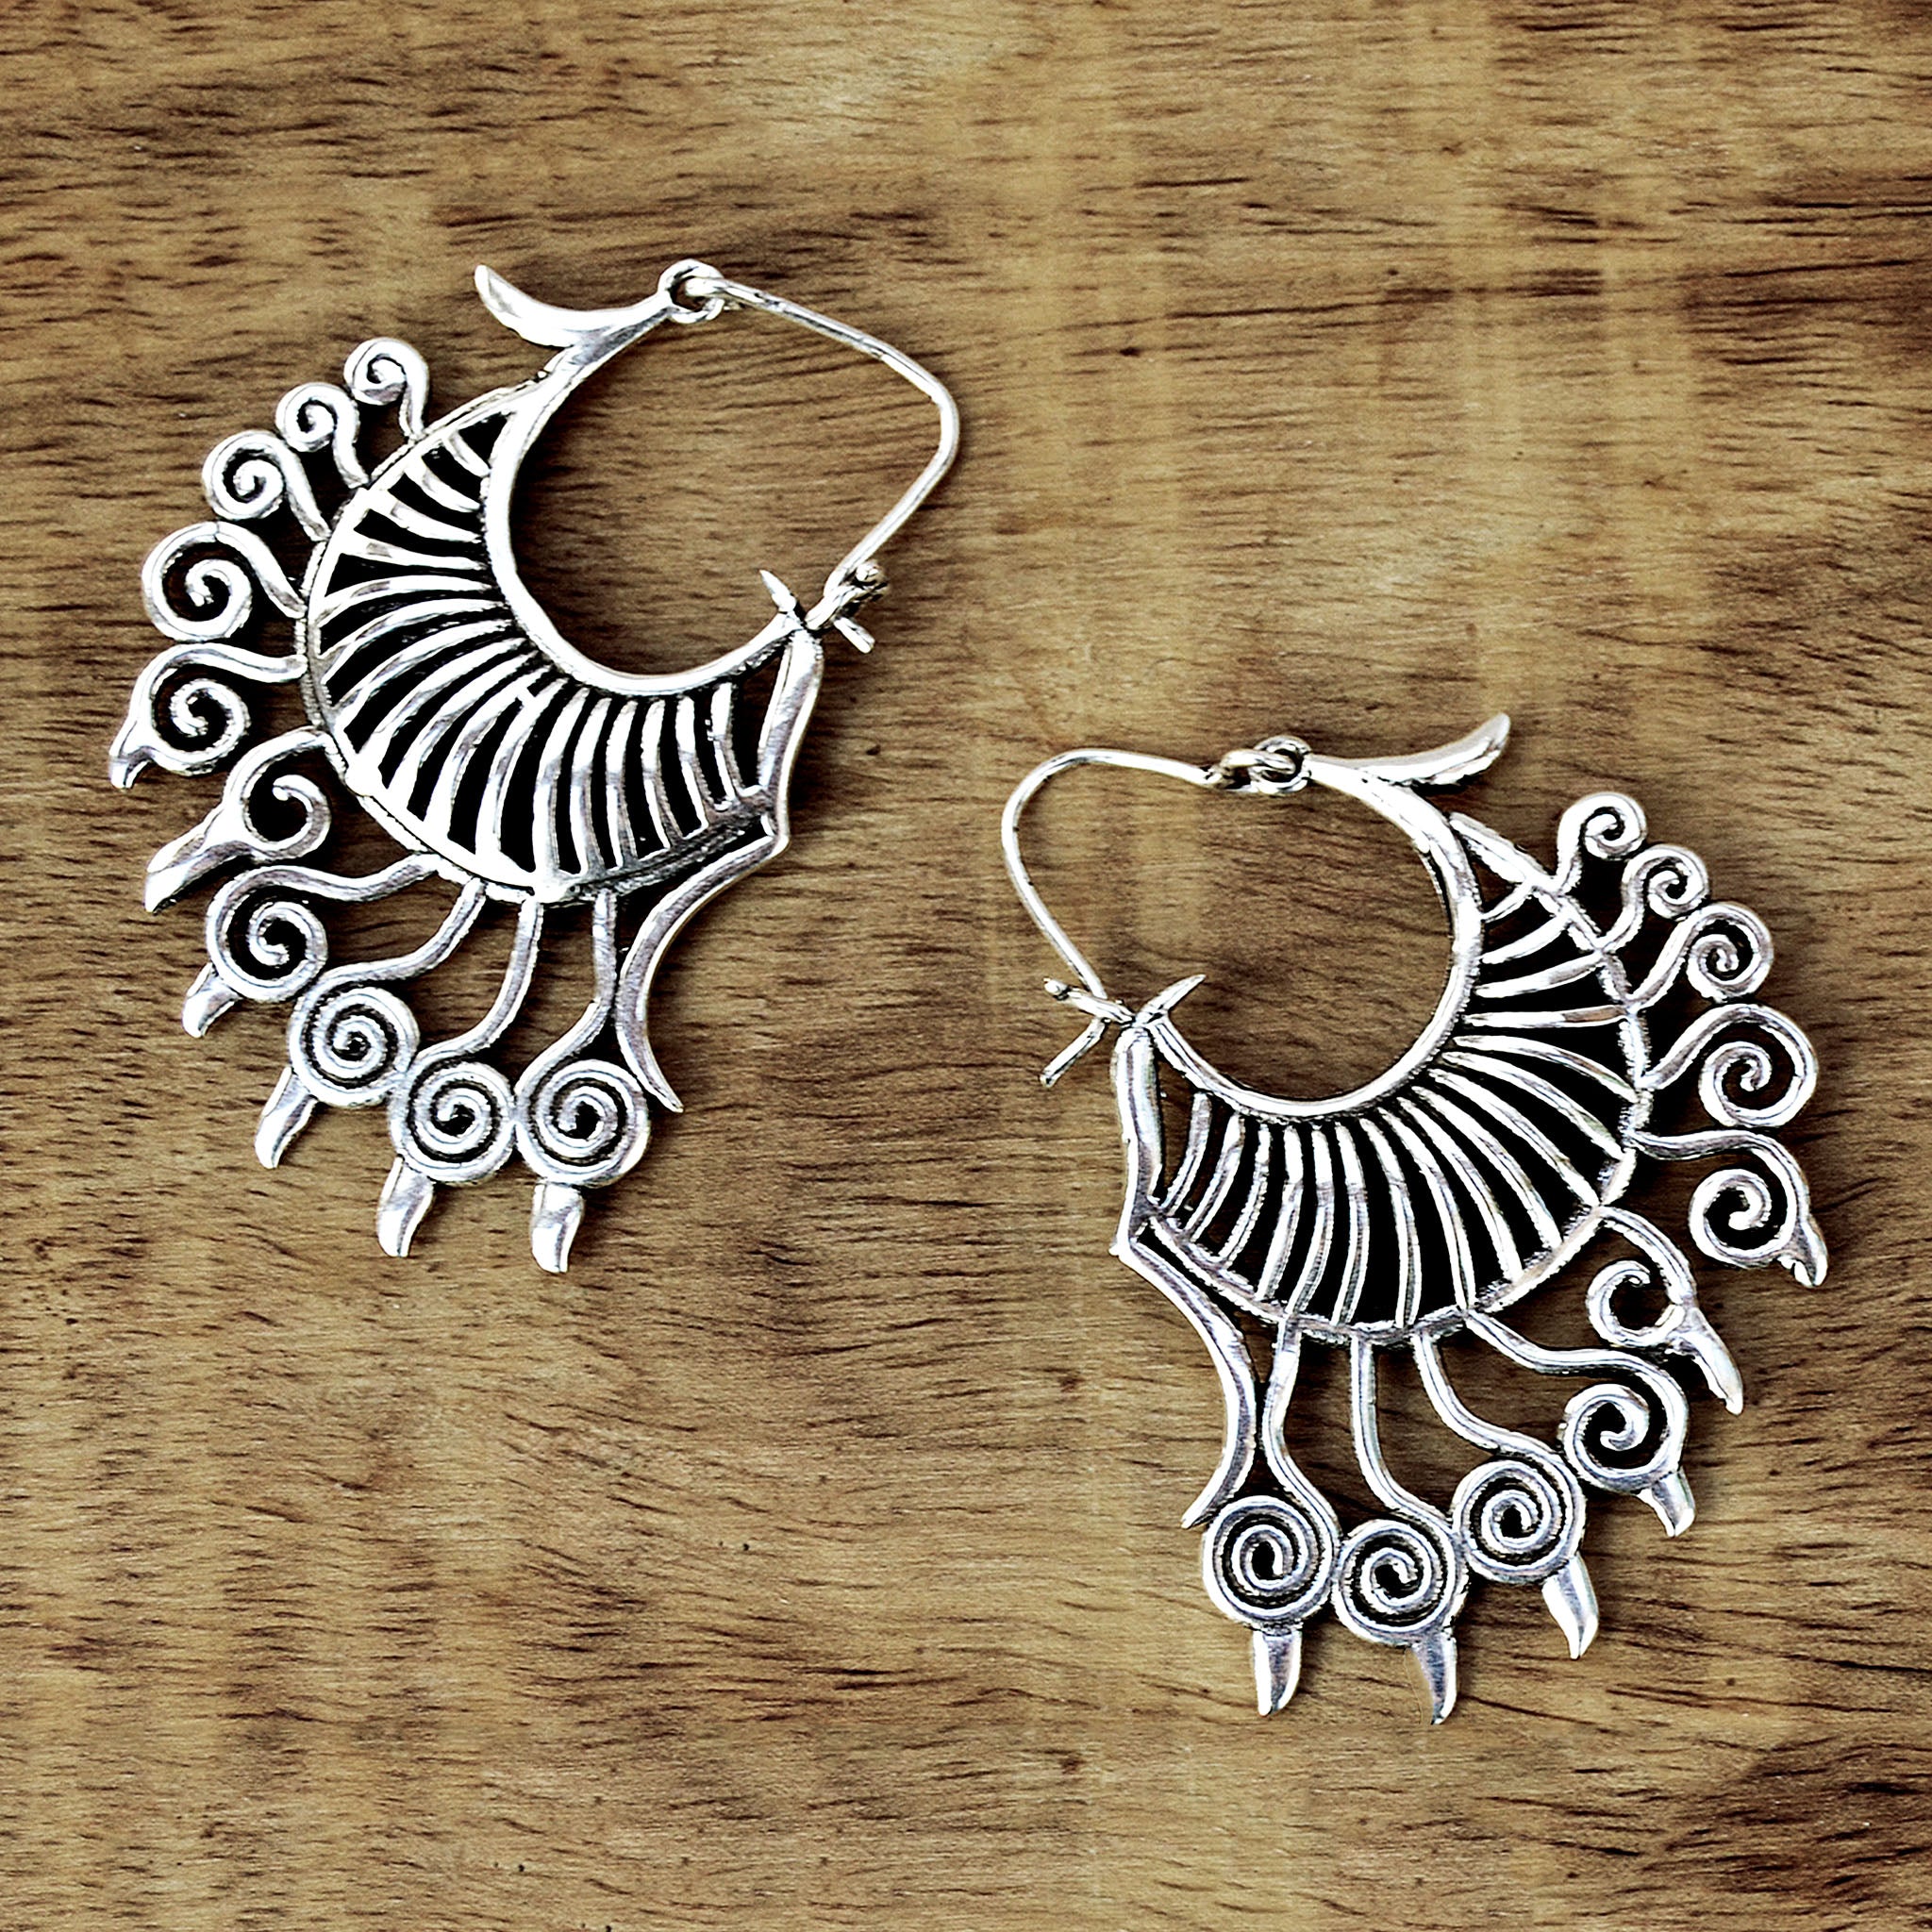 Ethnic silver earrings